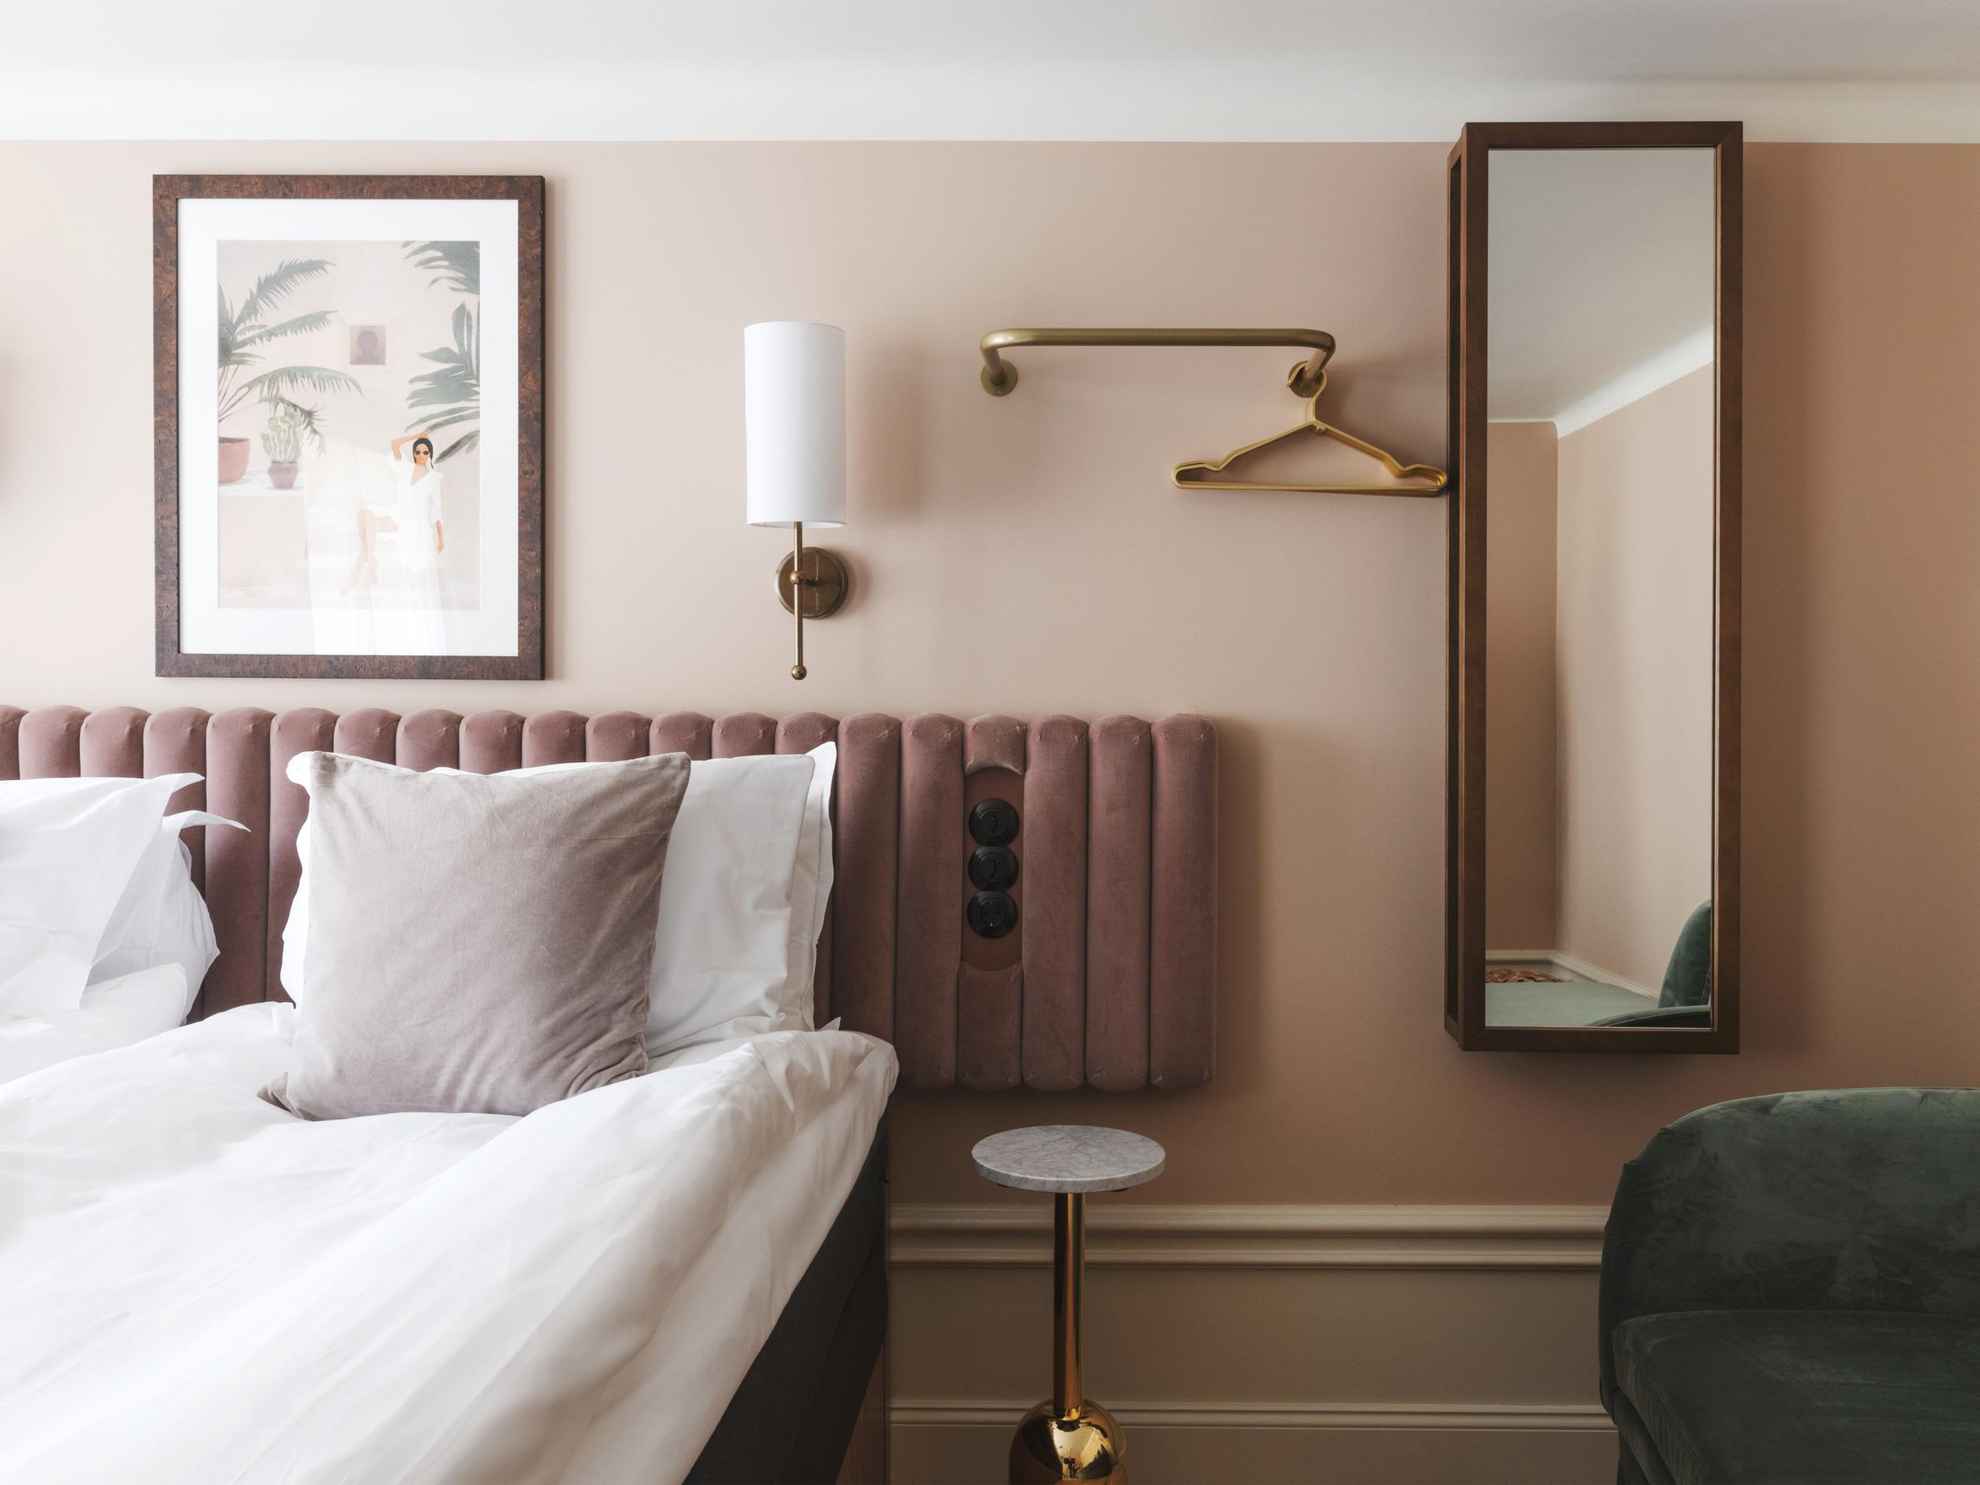 Une chambre d'hôtel avec des murs peints en beige et un plafond blanc. Sur les murs à côté du lit double, il y a une applique en laiton, un tableau, un miroir et un porte-manteau.